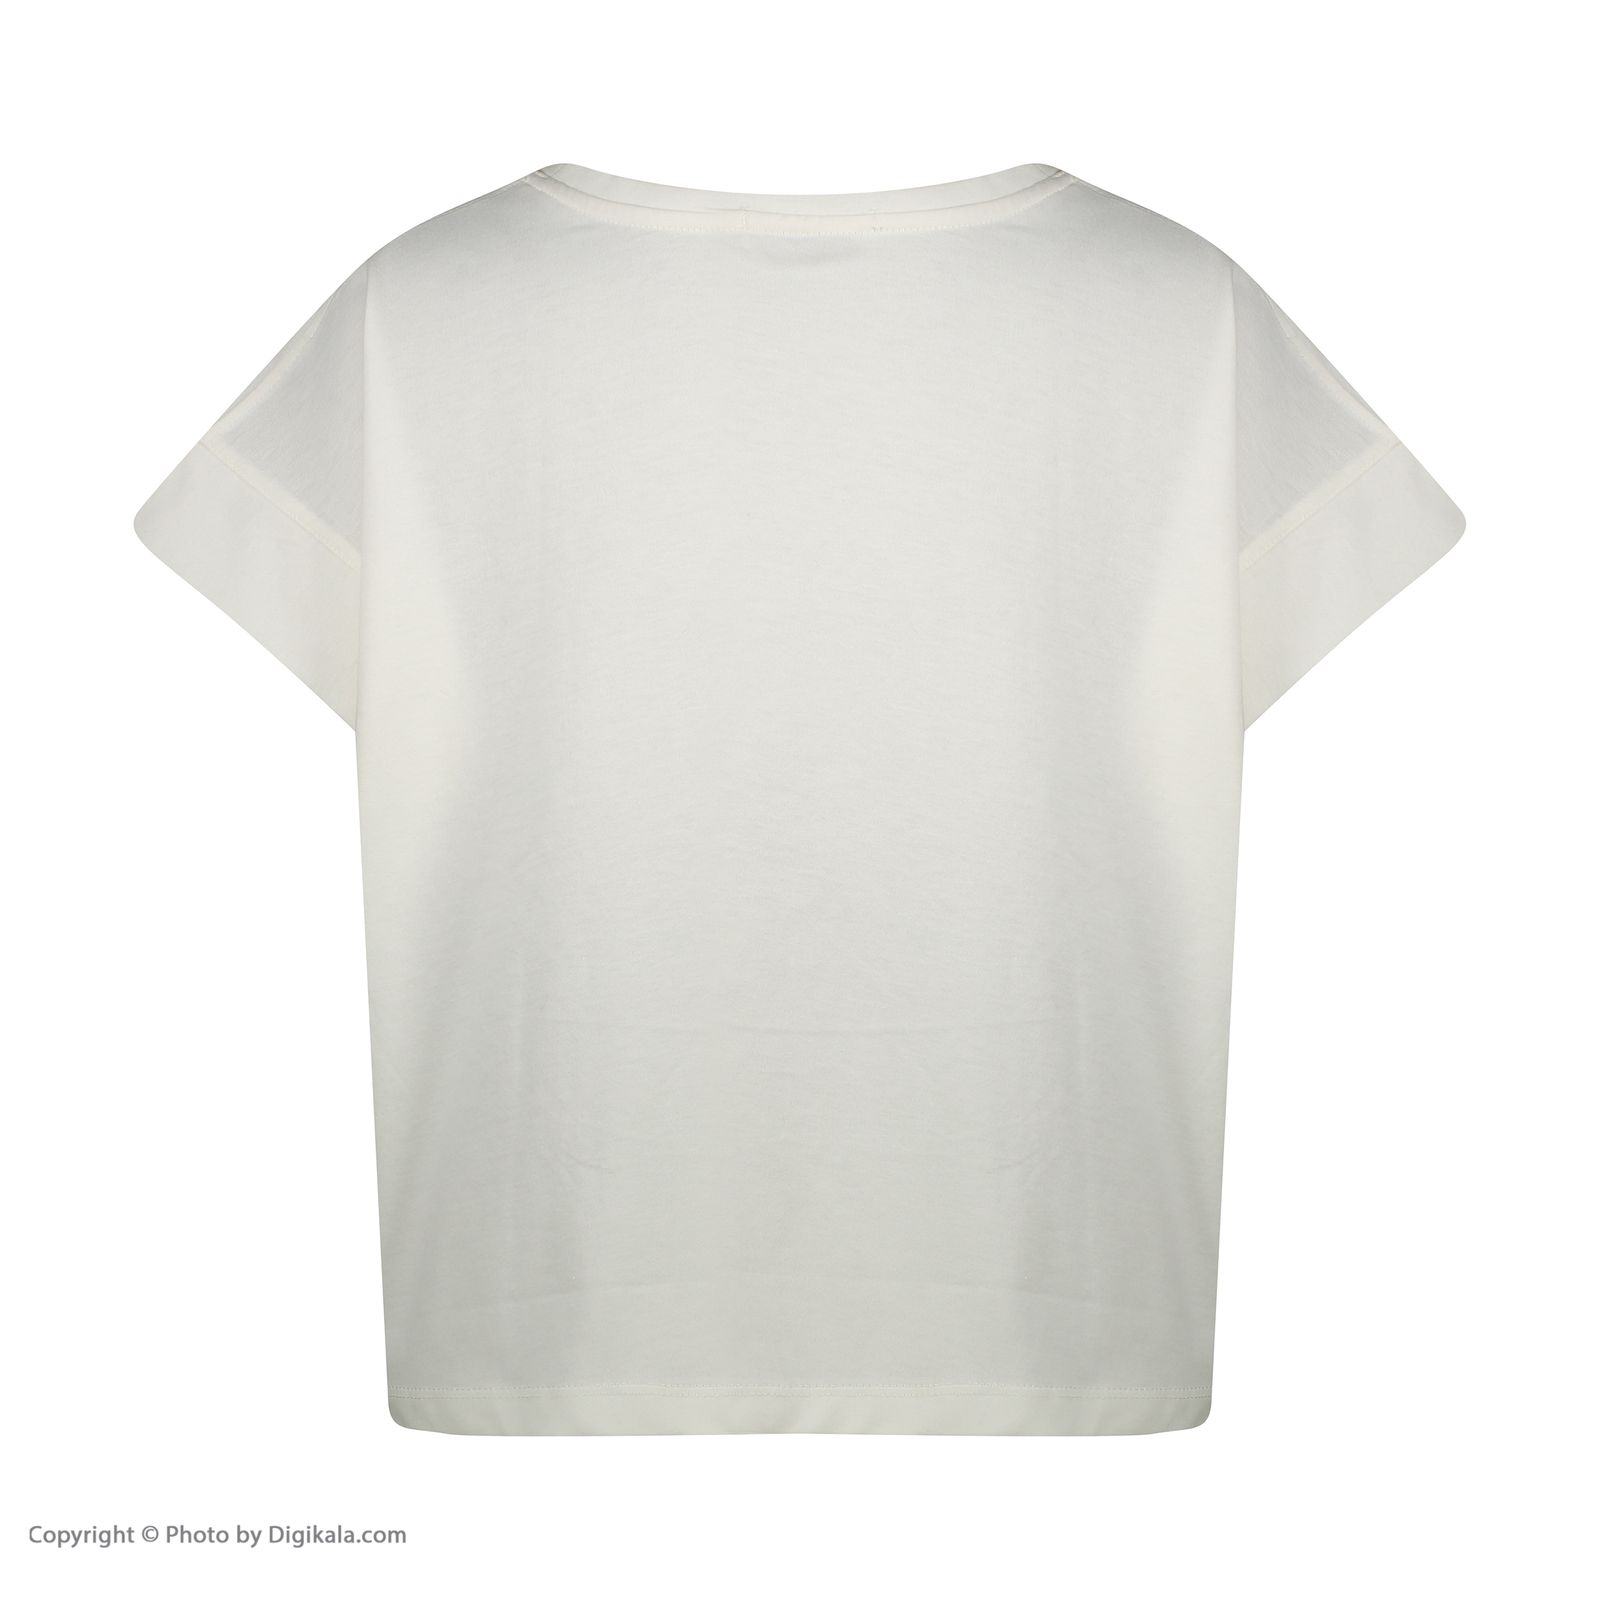  تی شرت زنانه جامه پوش آرا مدل 4012019394-05 -  - 3